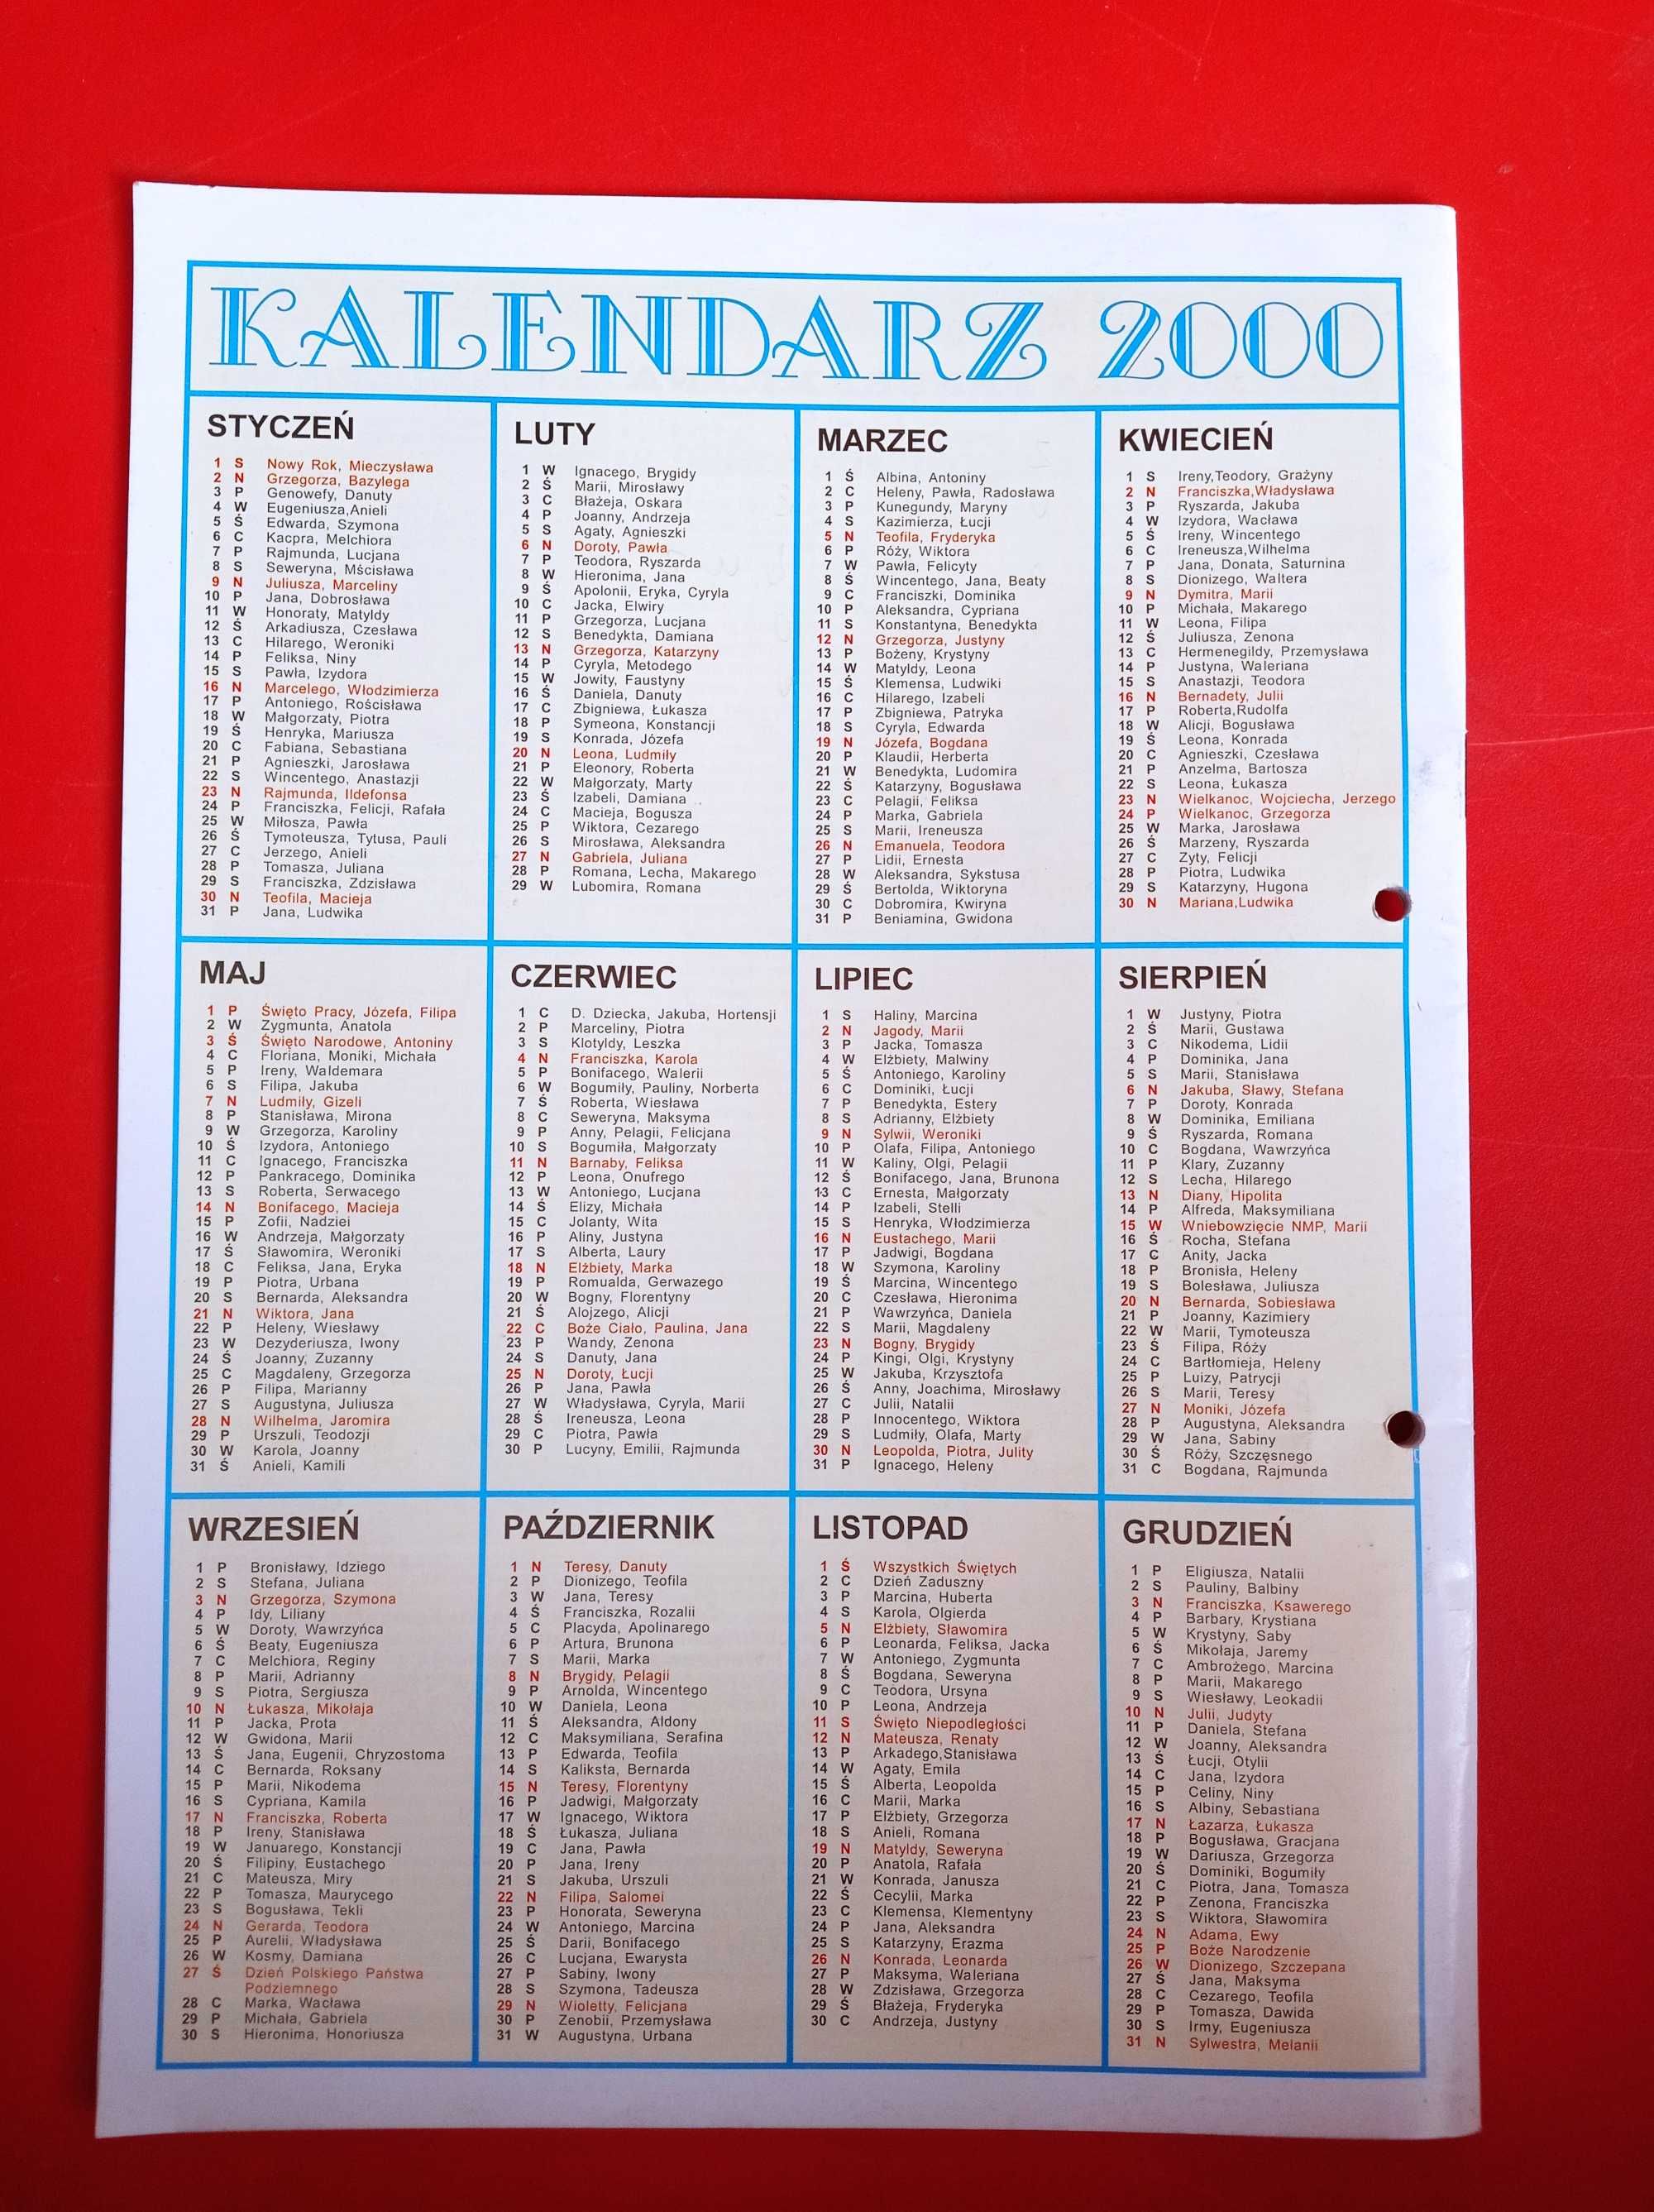 Polsce wierni nr 1/2000, styczeń 2000 + kalendarz 2000